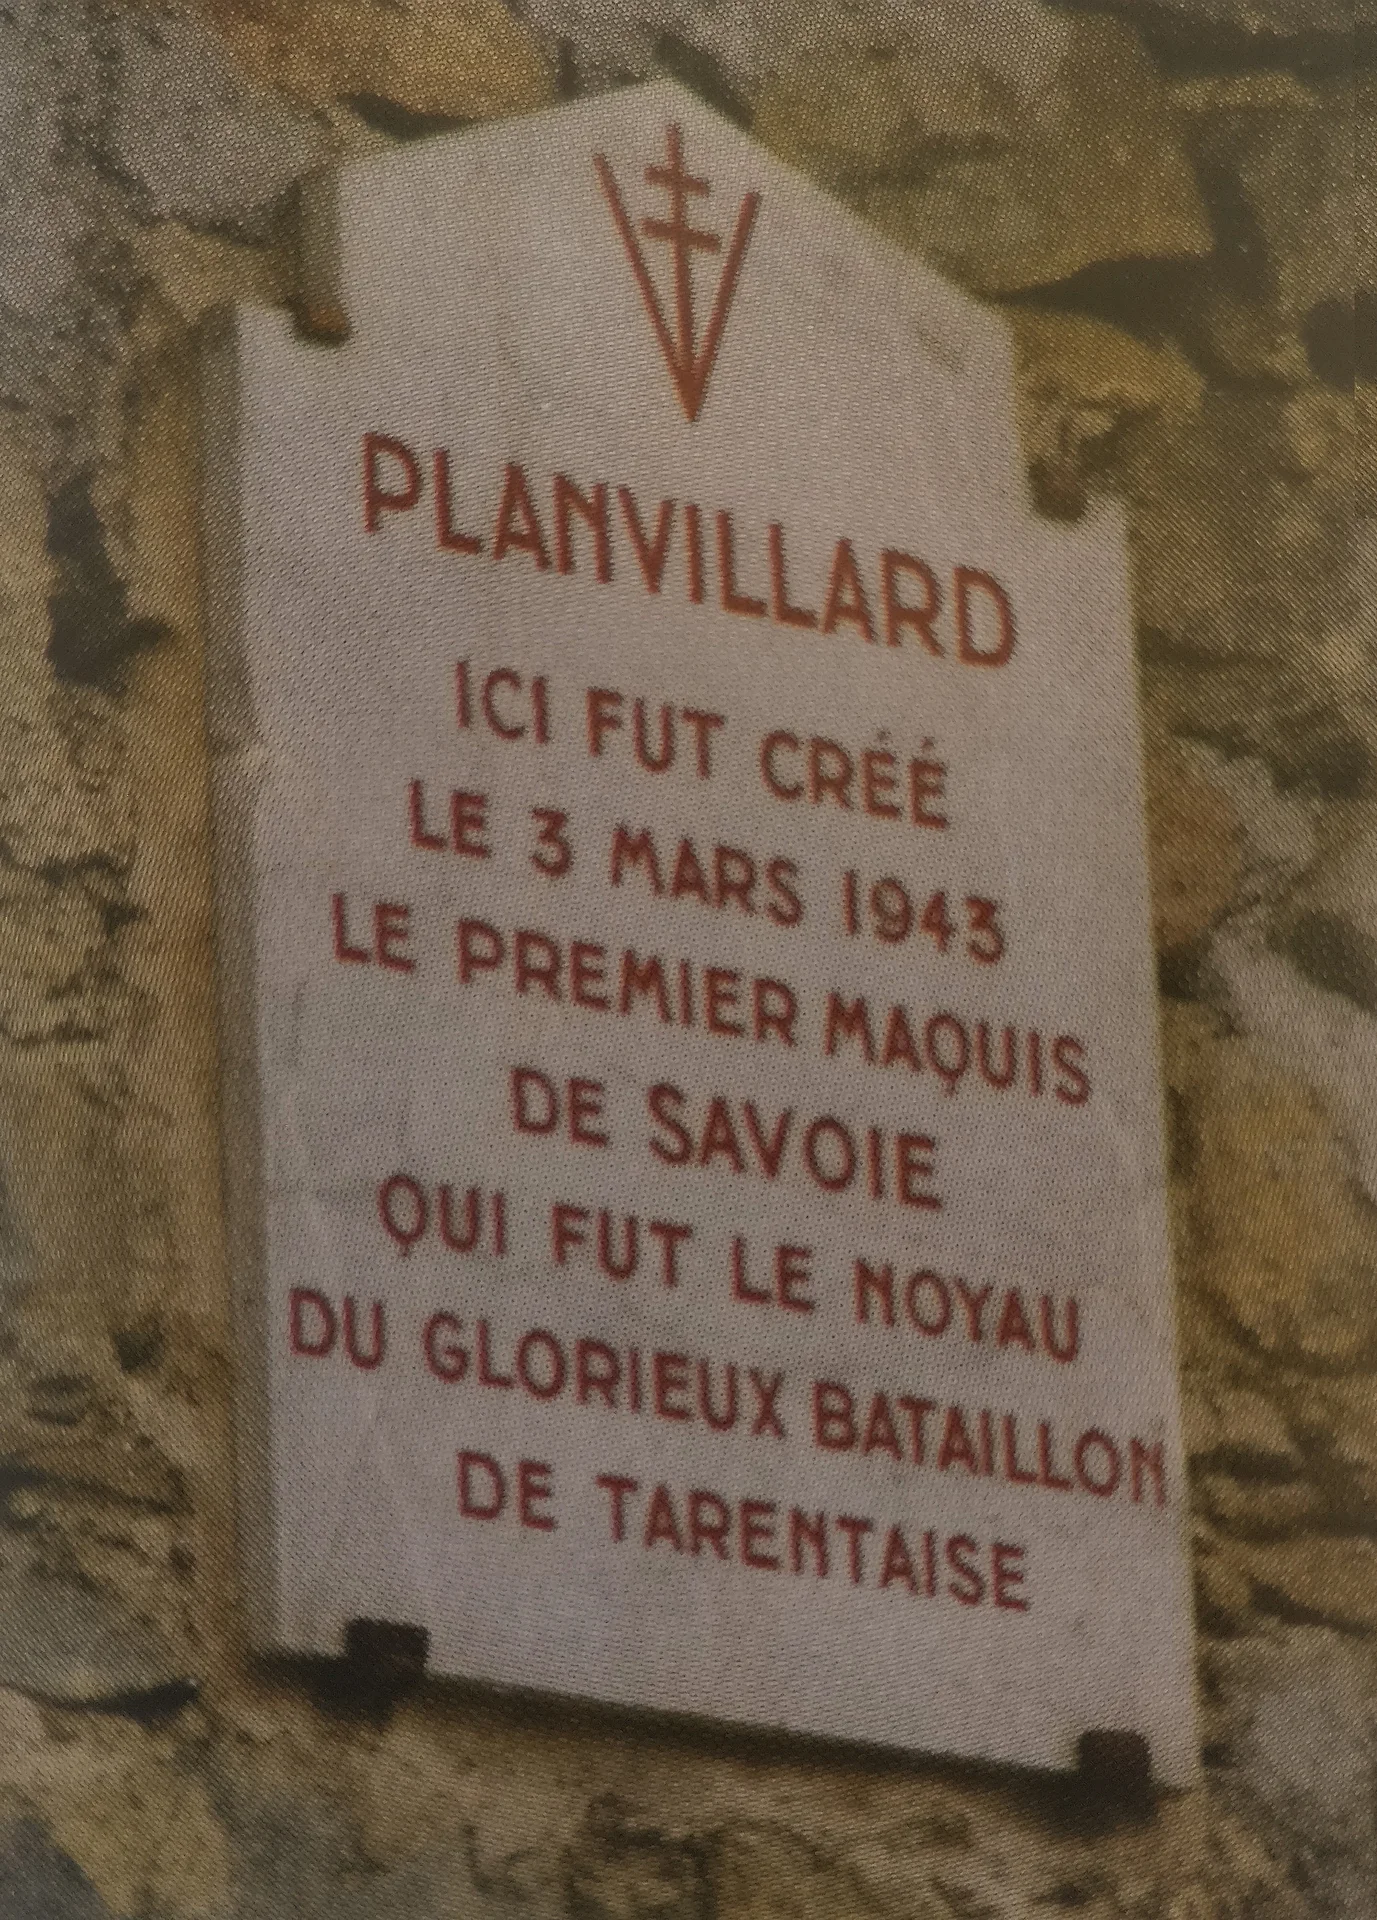 Juin 1944. Planvillard. Plaque commémorative en l’honneur du premier Maquis de Savoie.